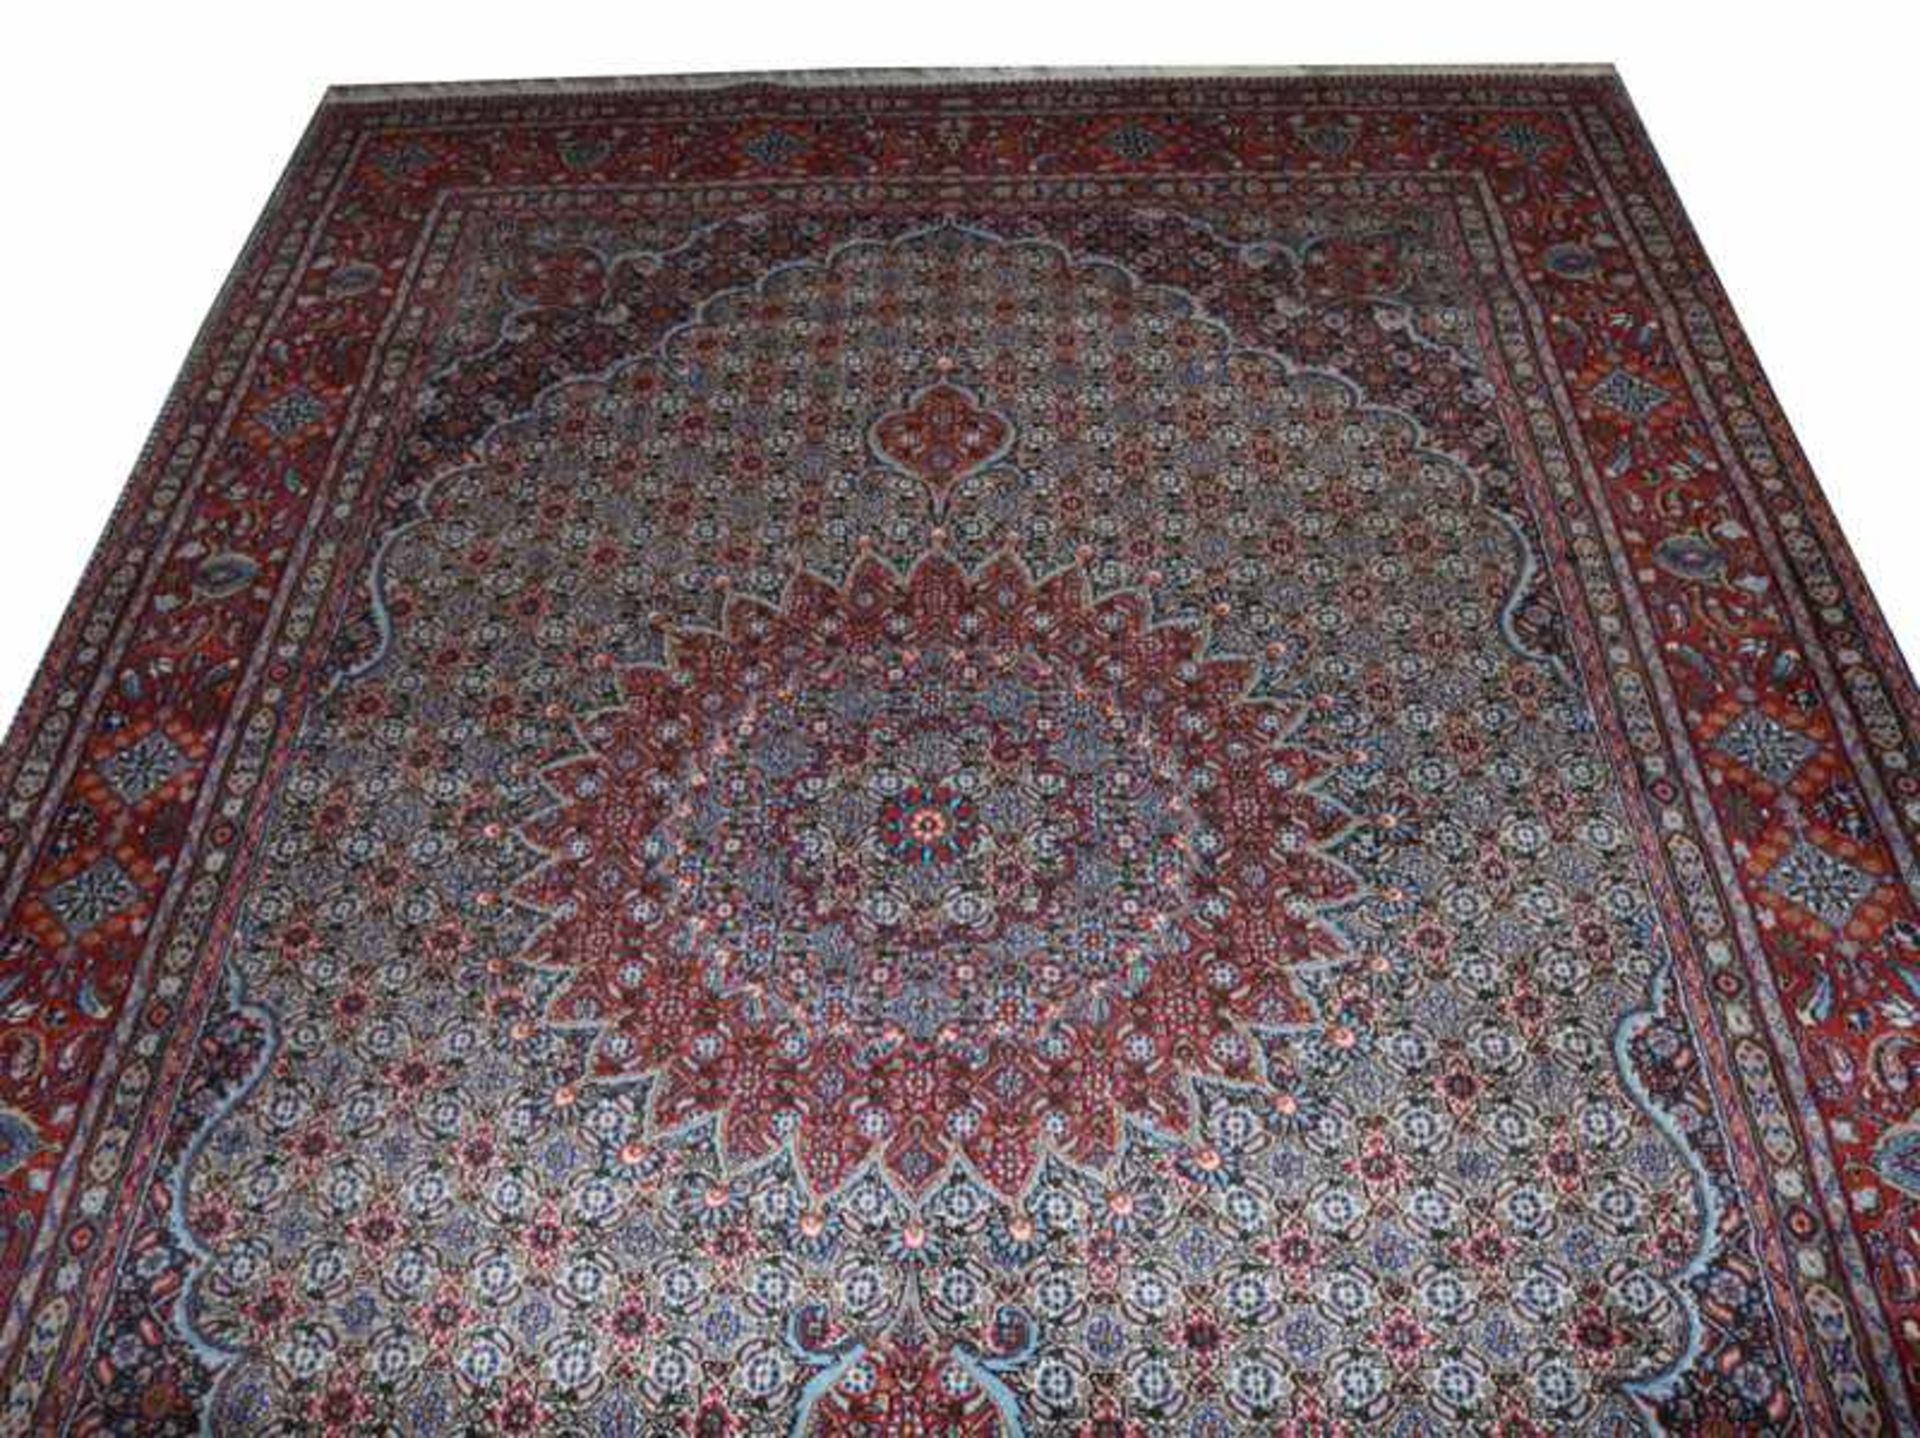 Teppich, Wiss, rot/blau/beige, Gebrauchsspuren, 290 cm x 200 cm